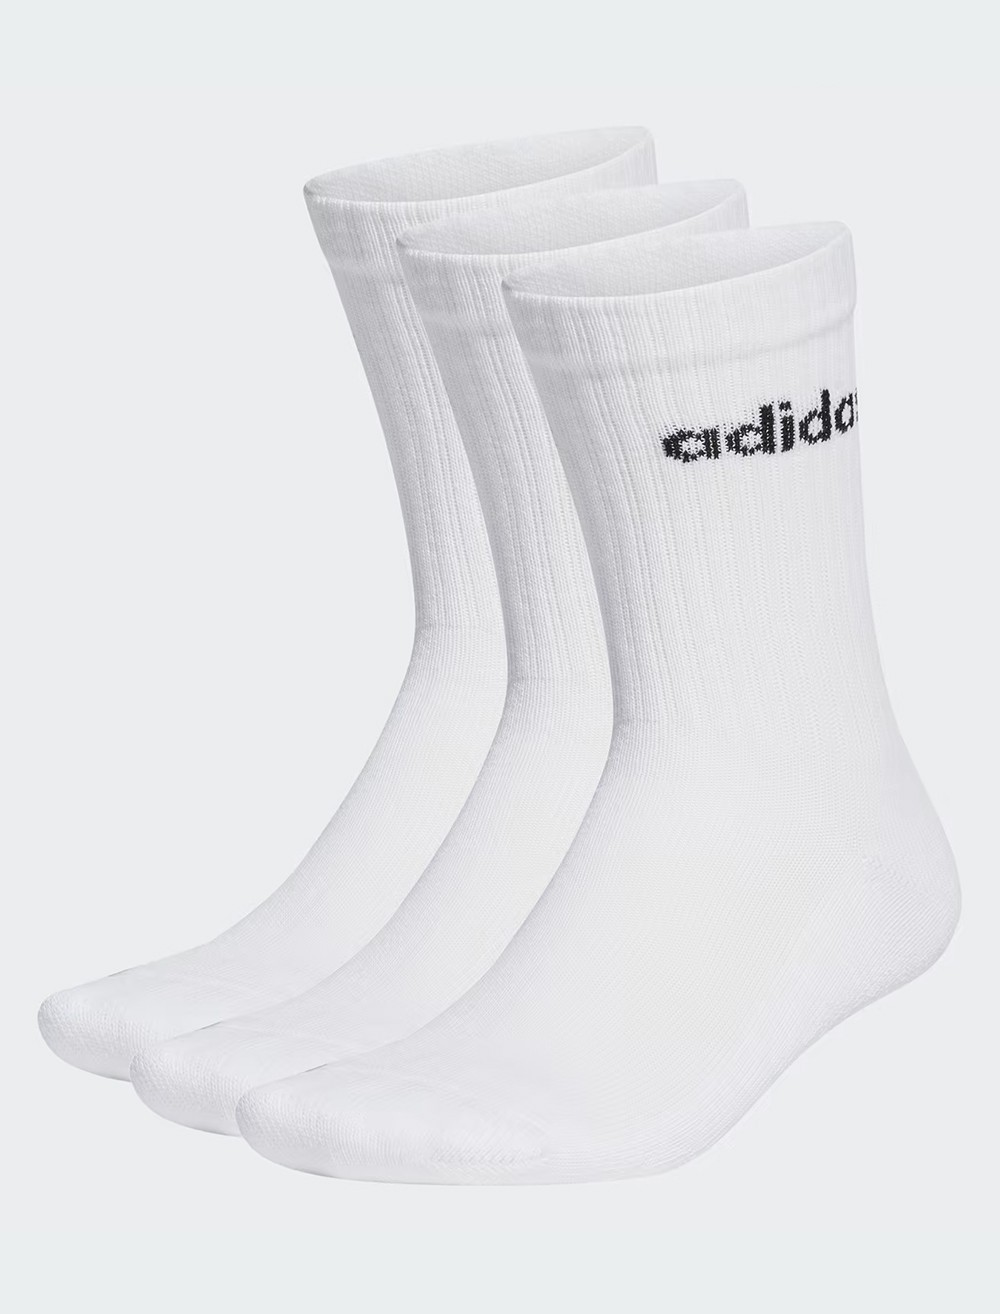 Носки  Adidas C LIN CREW 3P белые HT3455 изображение 2